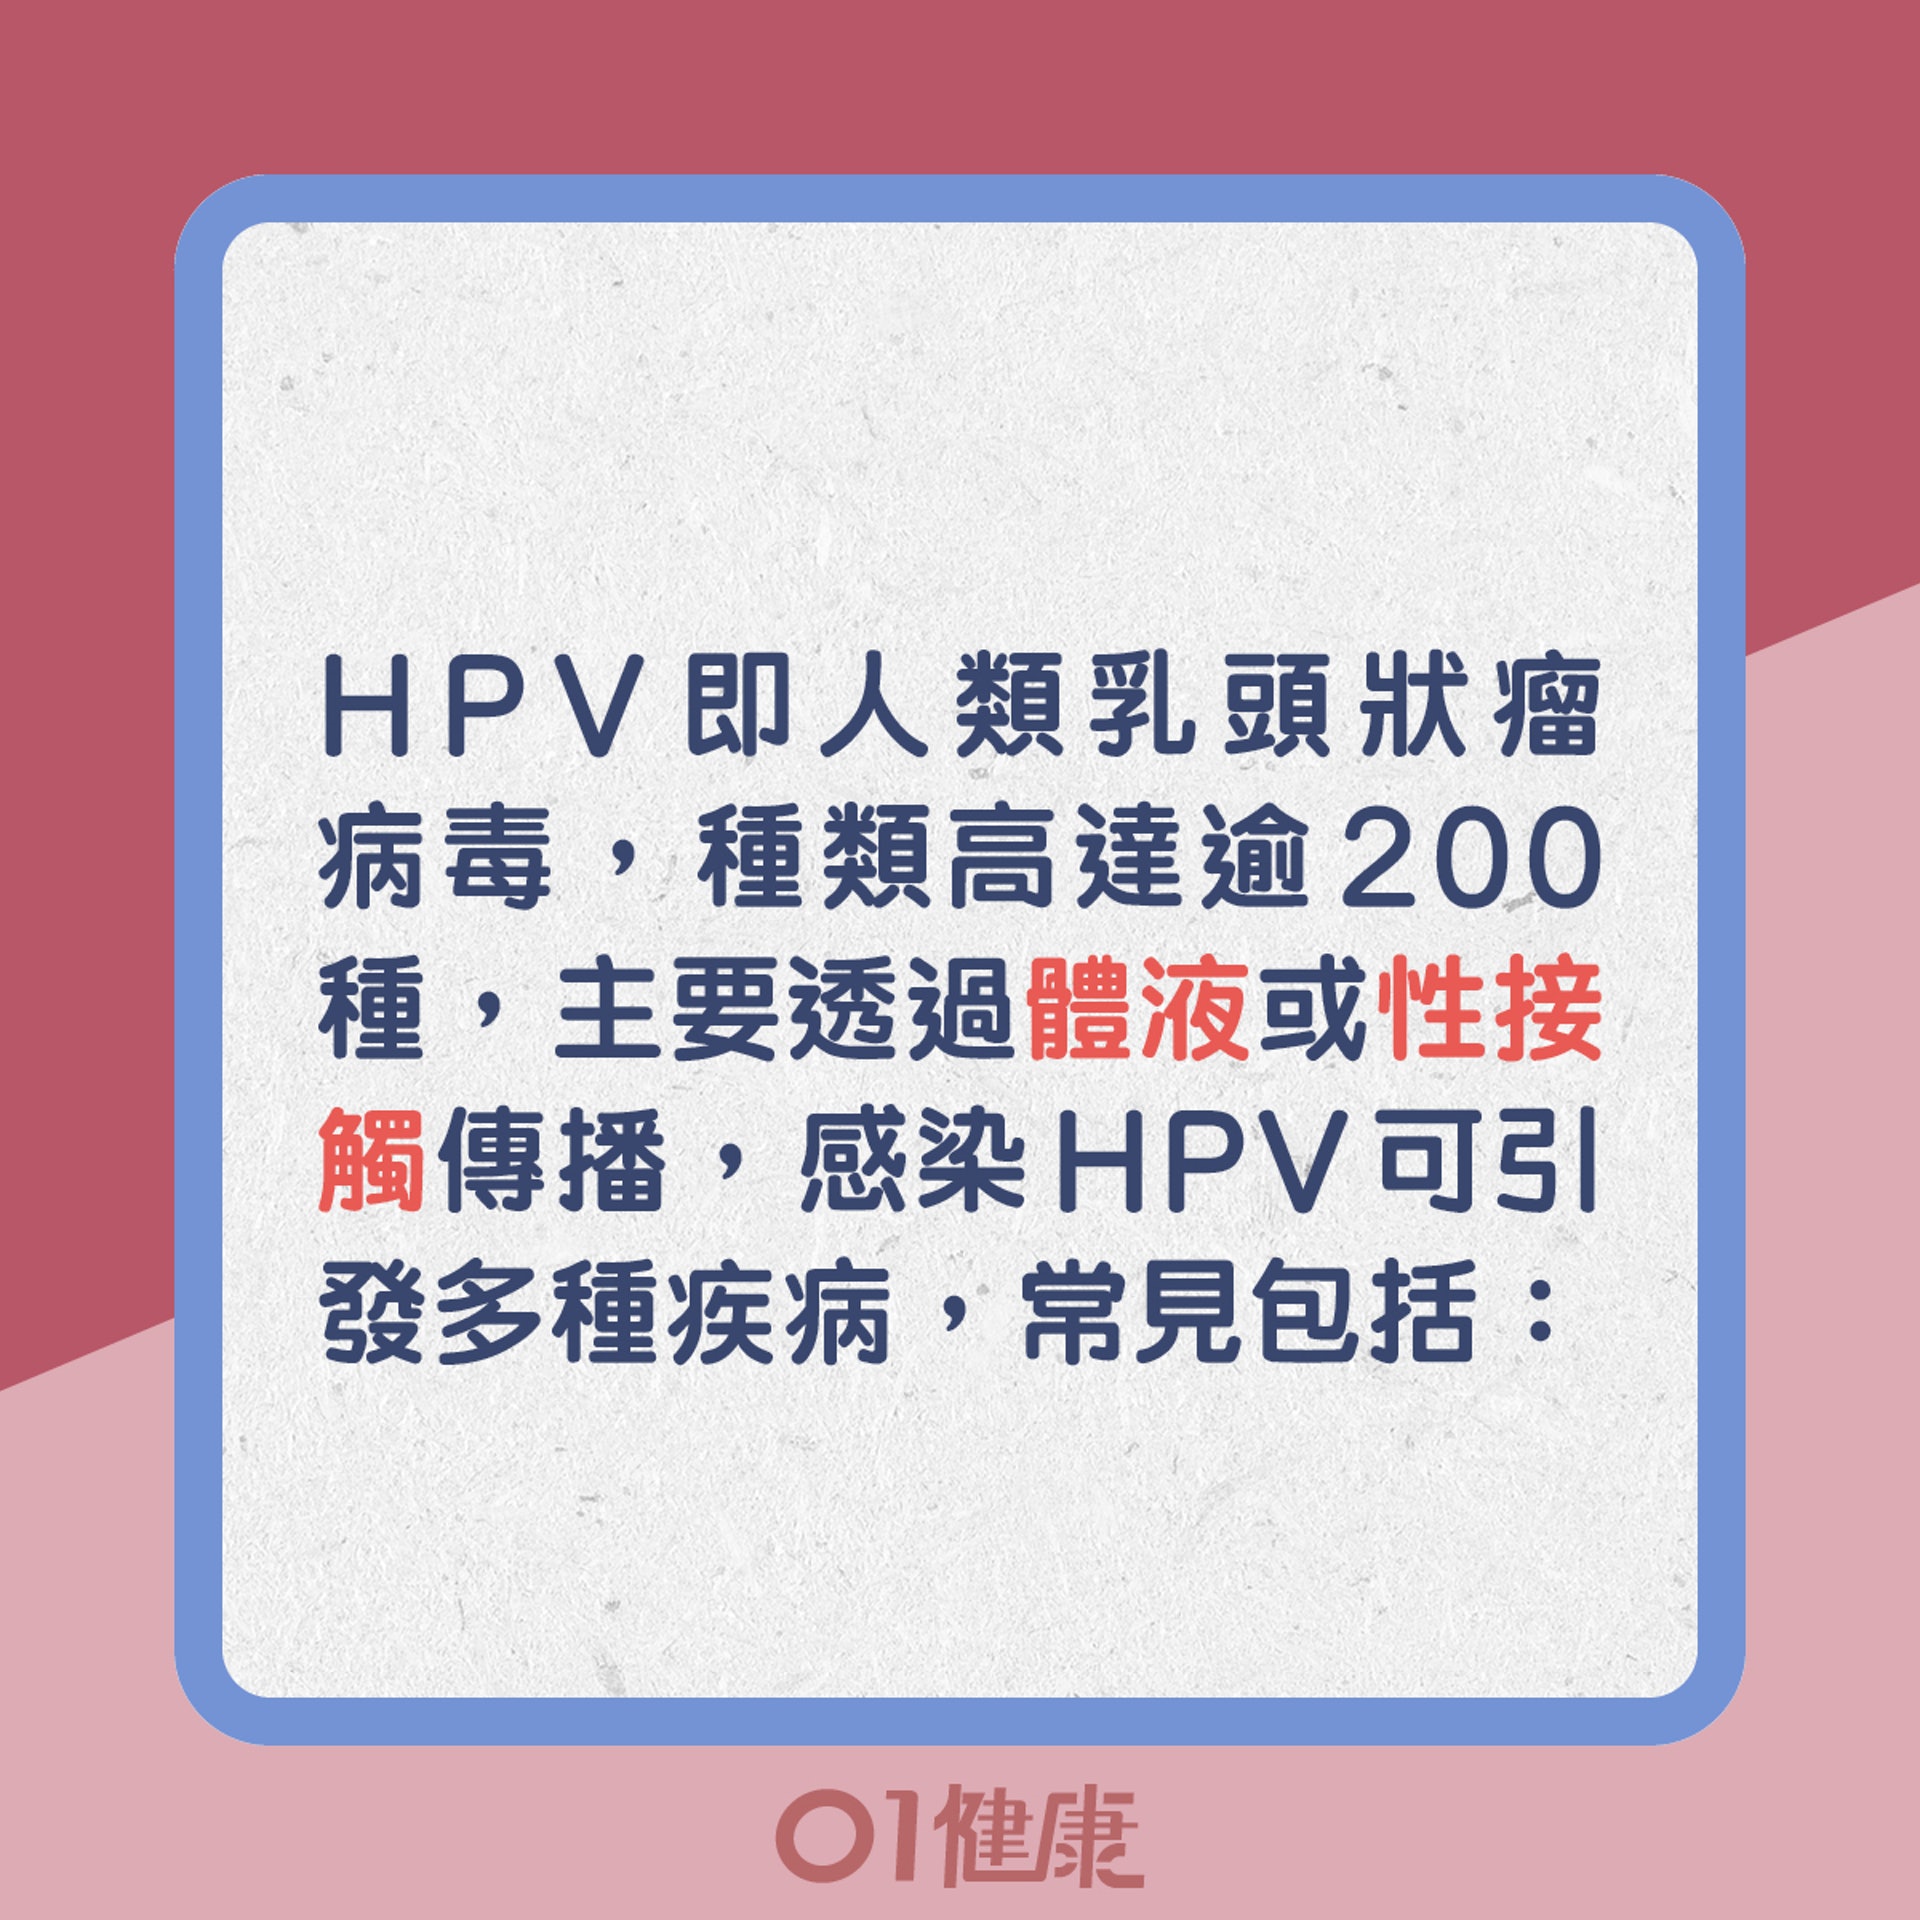 HPV即人類乳頭狀瘤病毒，種類高達逾200種，主要透過體液或性接觸傳播，感染HPV可引發多種疾病，常見包括：（01製圖）